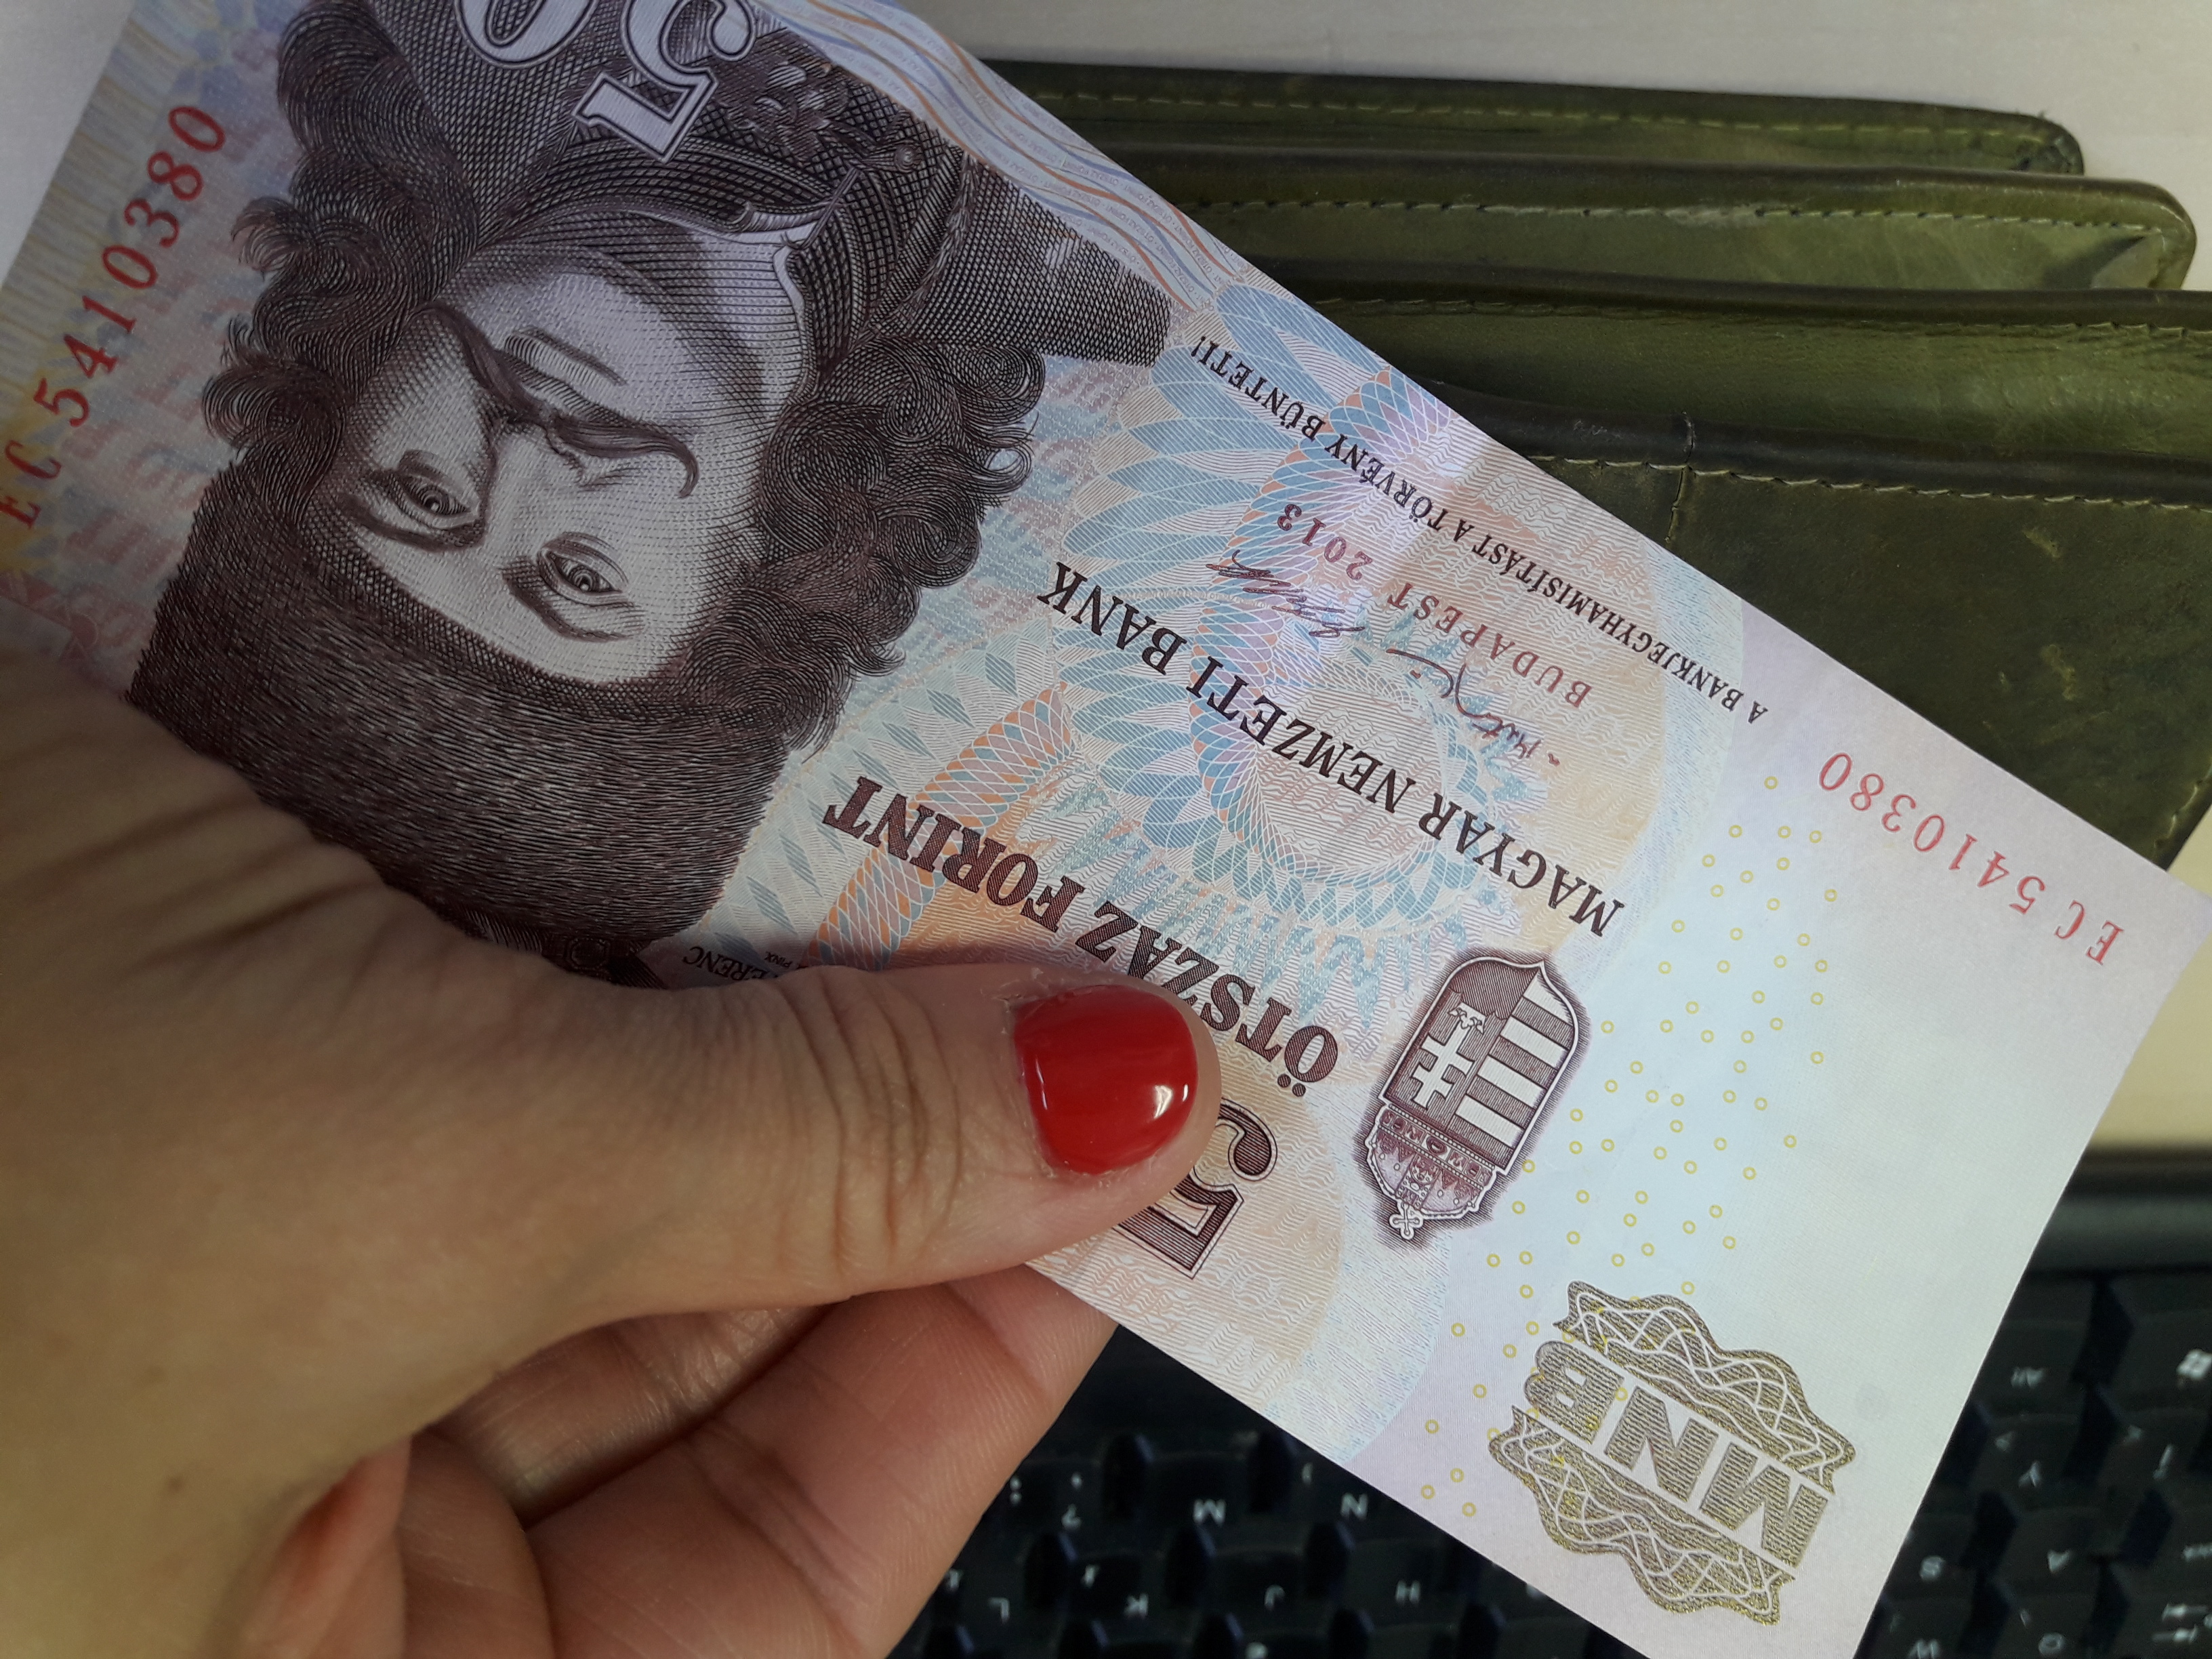 Megújul az 500 forintos bankjegy, így néz majd ki! Meddig lehet fizetni a régi ötszázassal? - A Magyar Nemzeti Bank közleménye